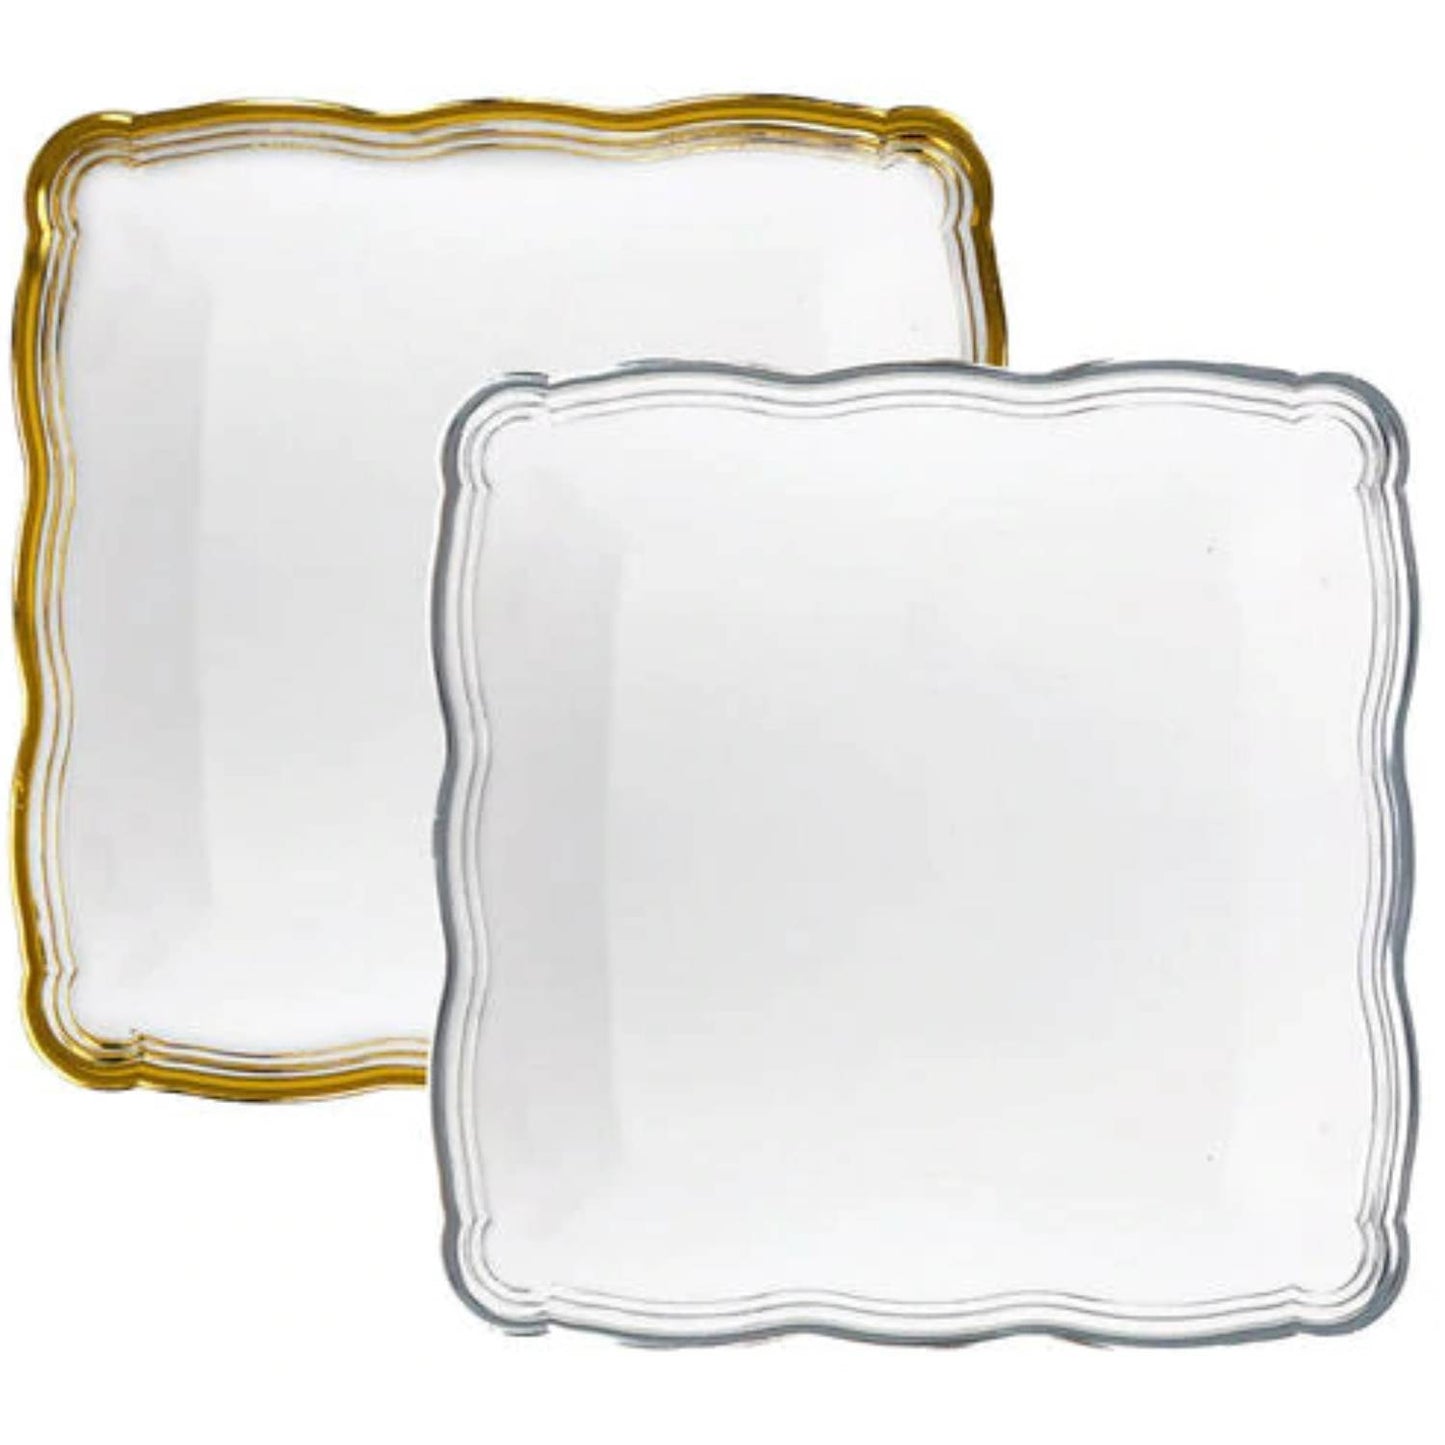 Aristocrat Collection Square Serving Trays White & Silver 12” x 12” Serverware Decorline   